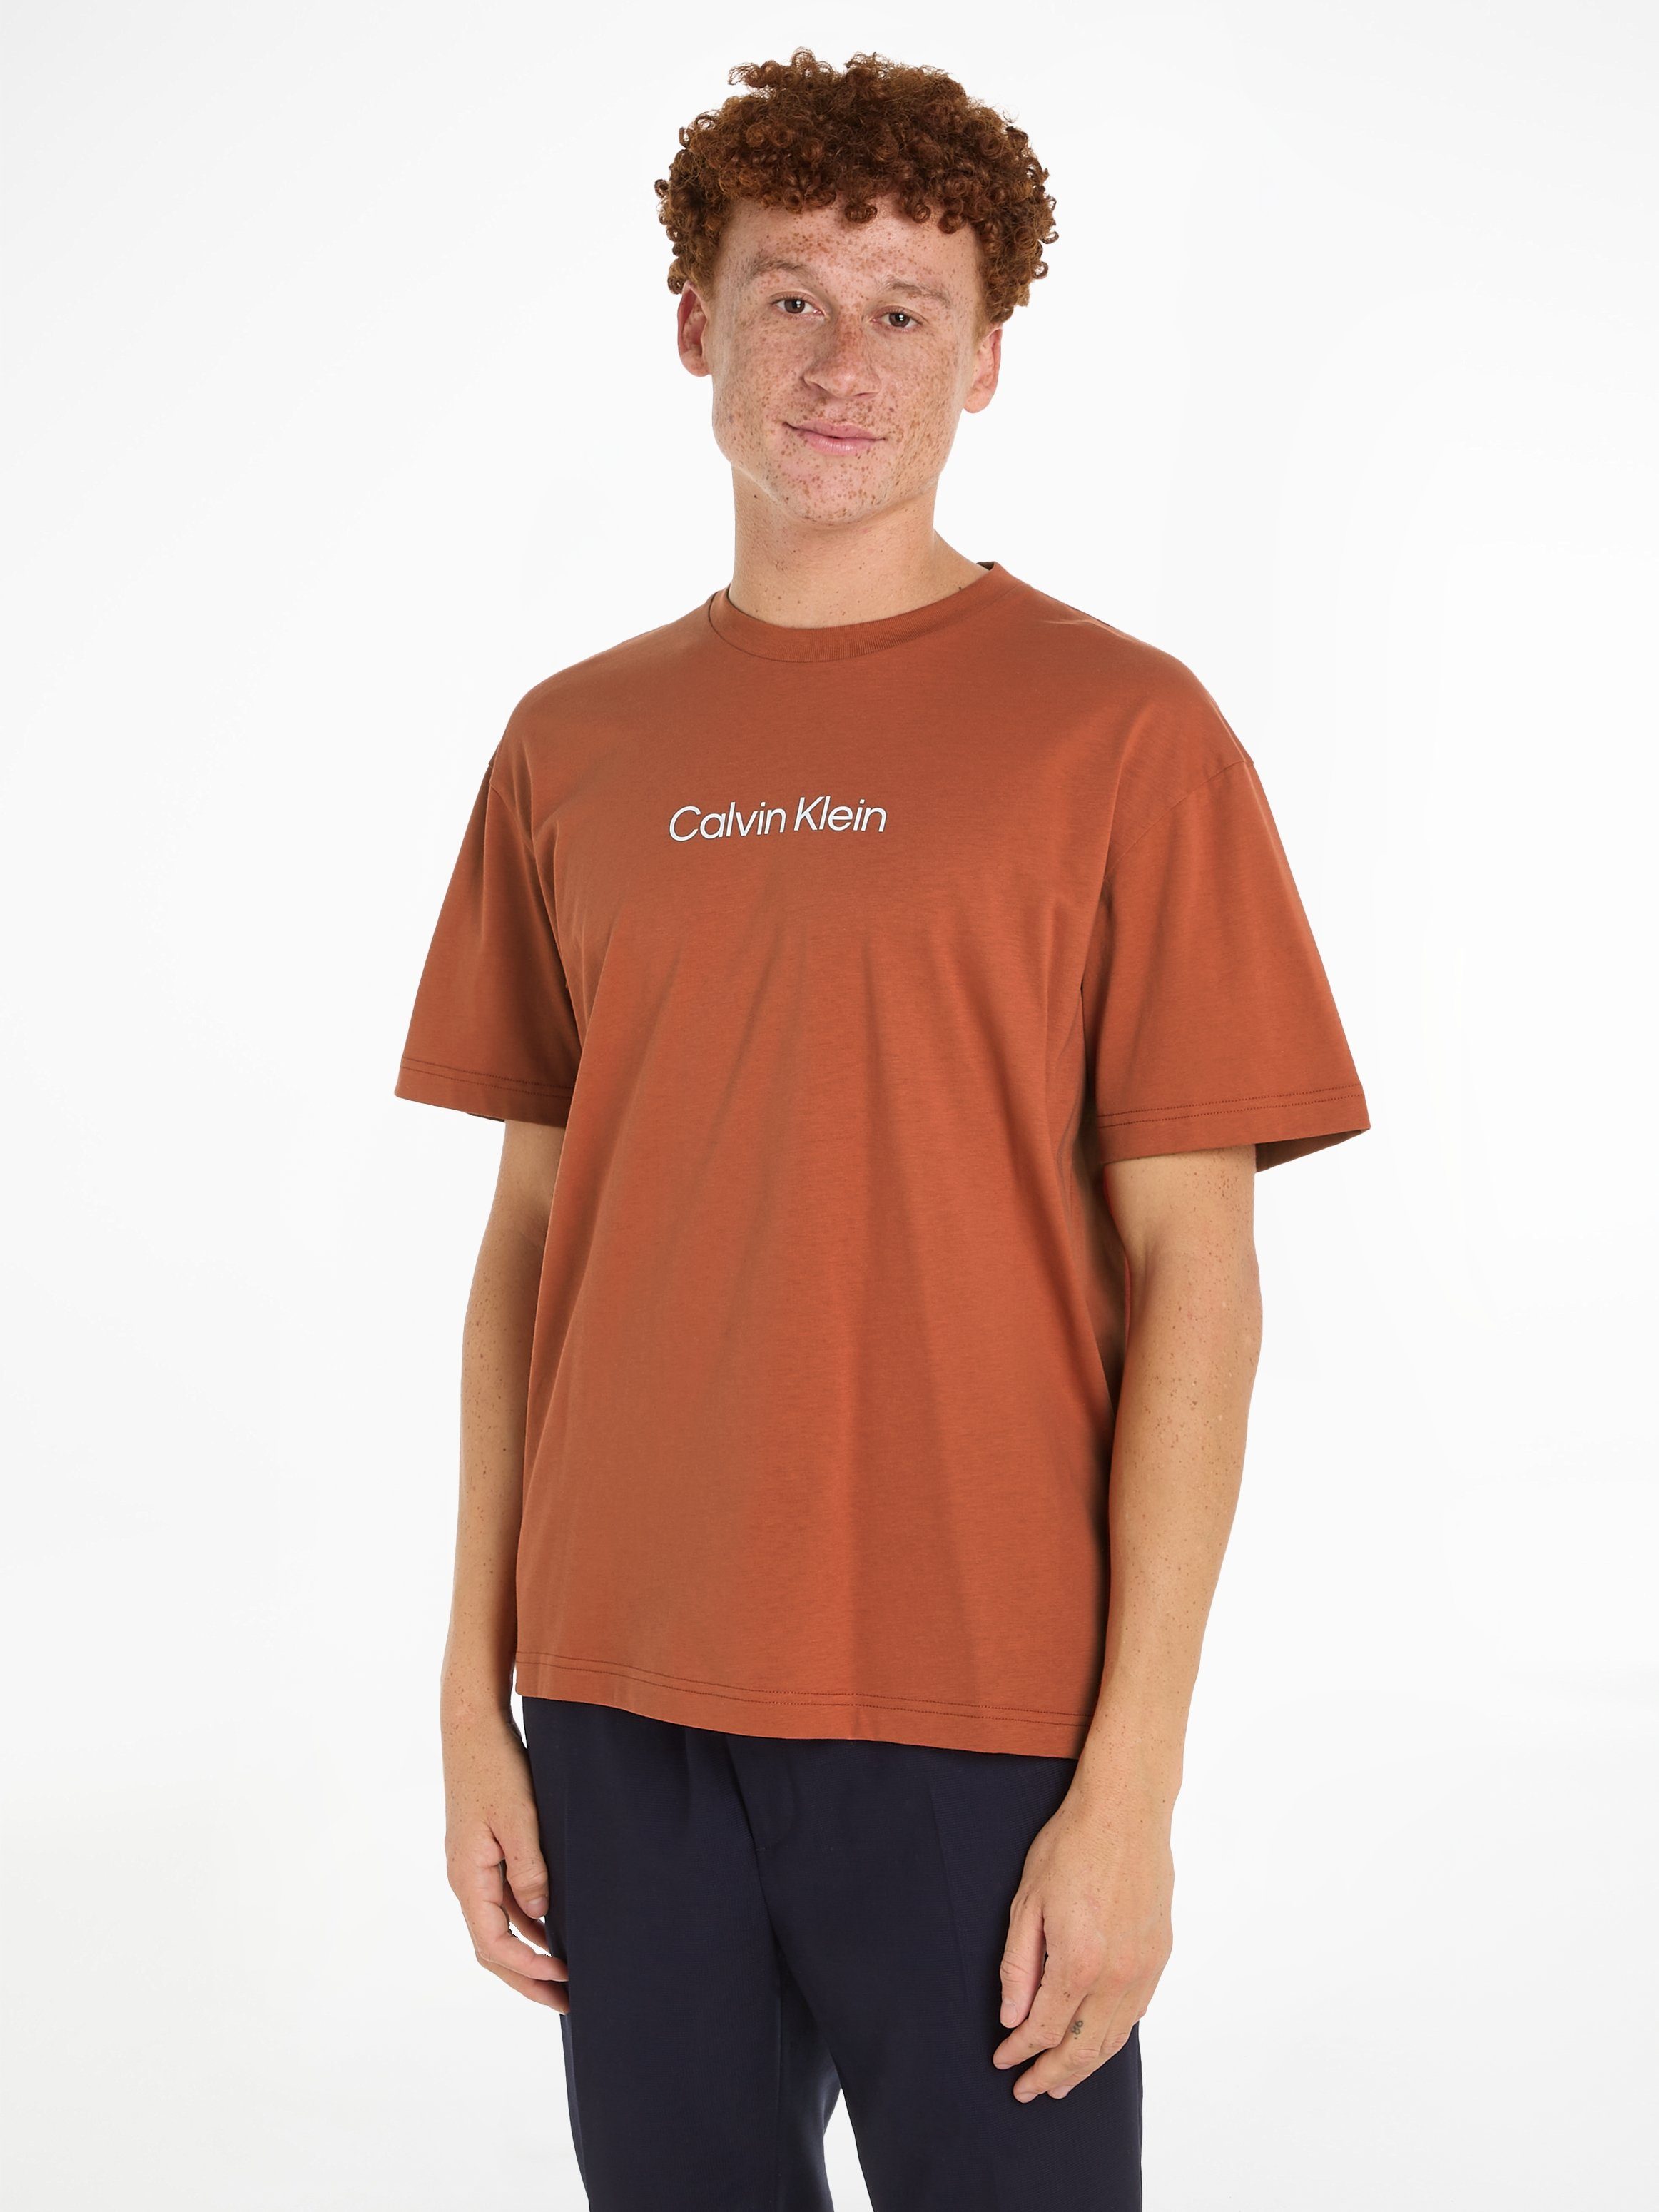 Calvin Klein T-Shirt HERO Copper Sun COMFORT mit LOGO aufgedrucktem T-SHIRT Markenlabel